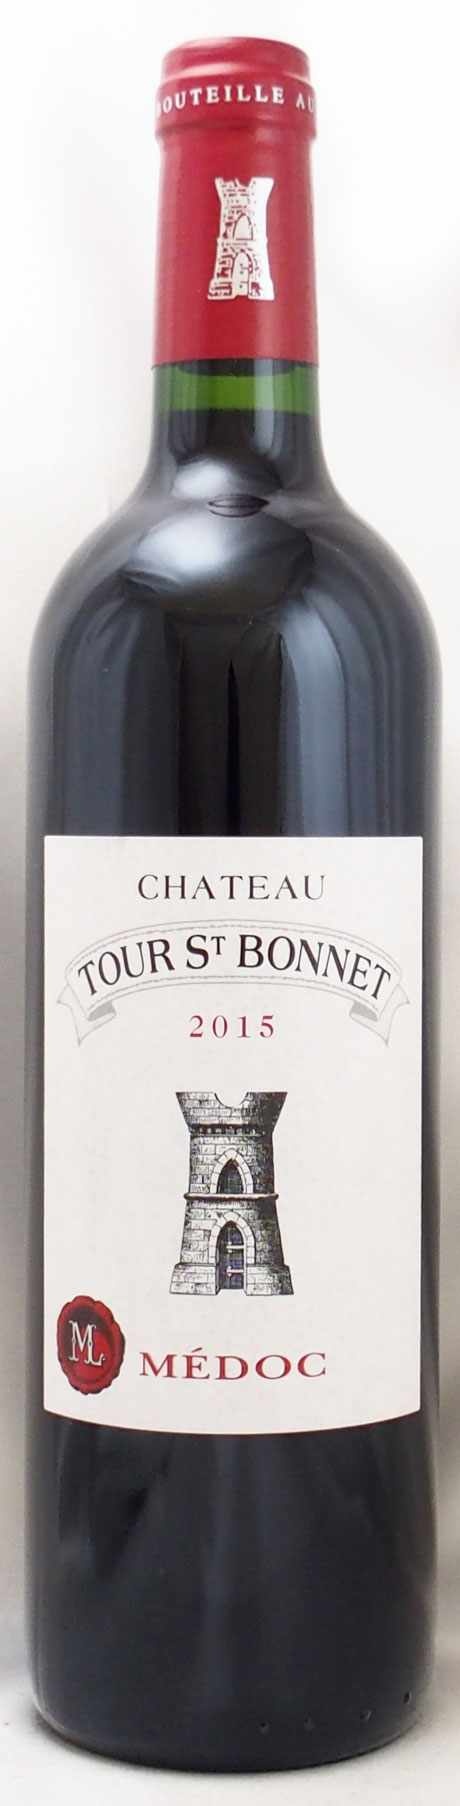 2015年 シャトー トゥール サン ボネ CHATEAU TOUR ST BONNET の販売[ヴィンテージワイン専門店のNengou-wine .com]